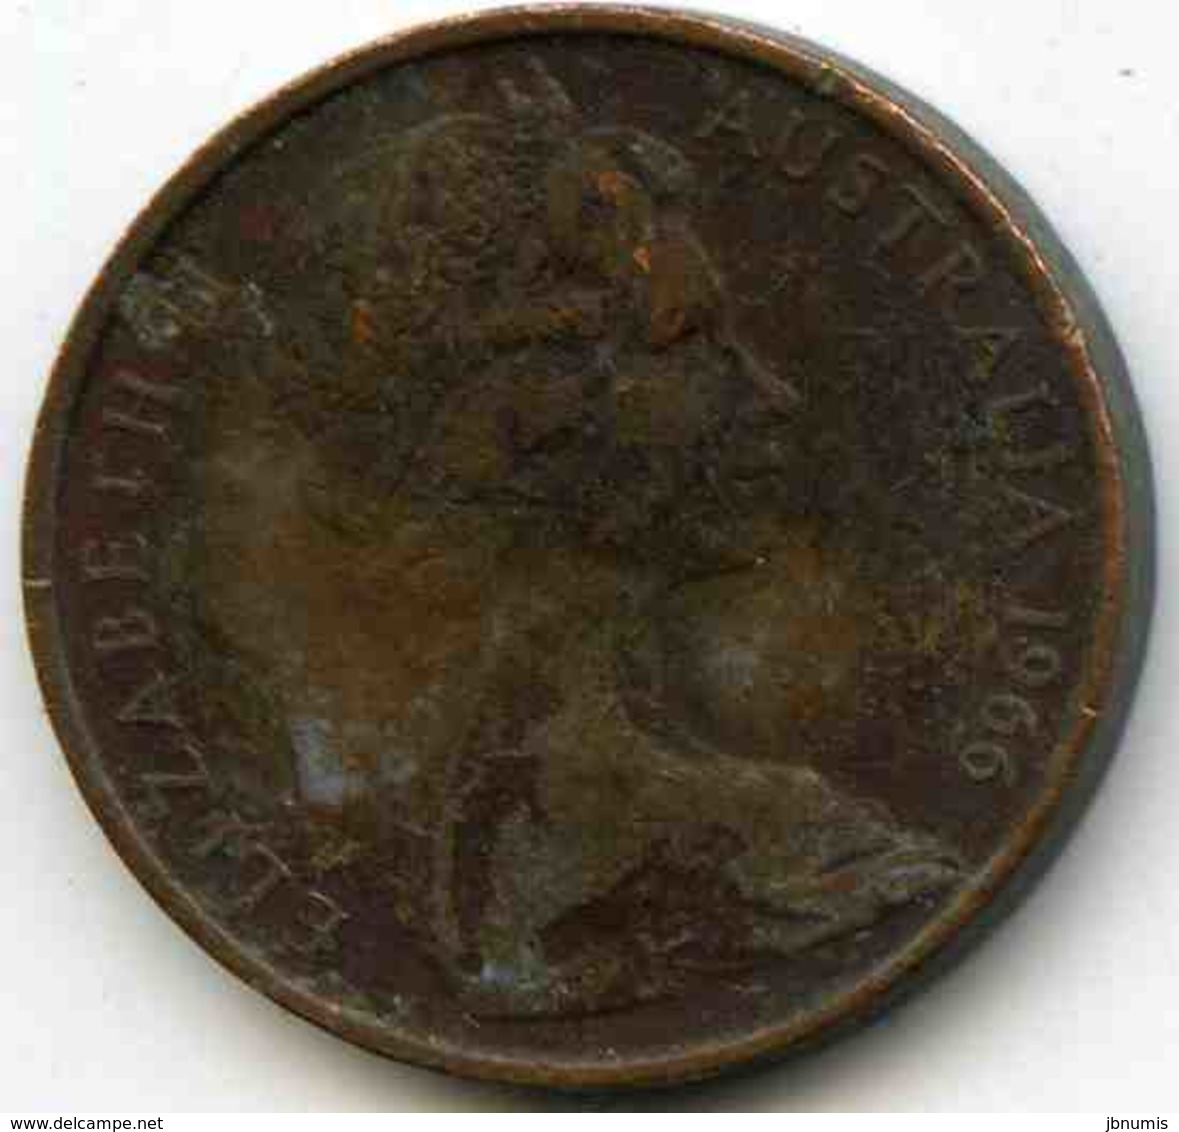 Australie Australia 2 Cents 1966 KM 63 - 2 Cents